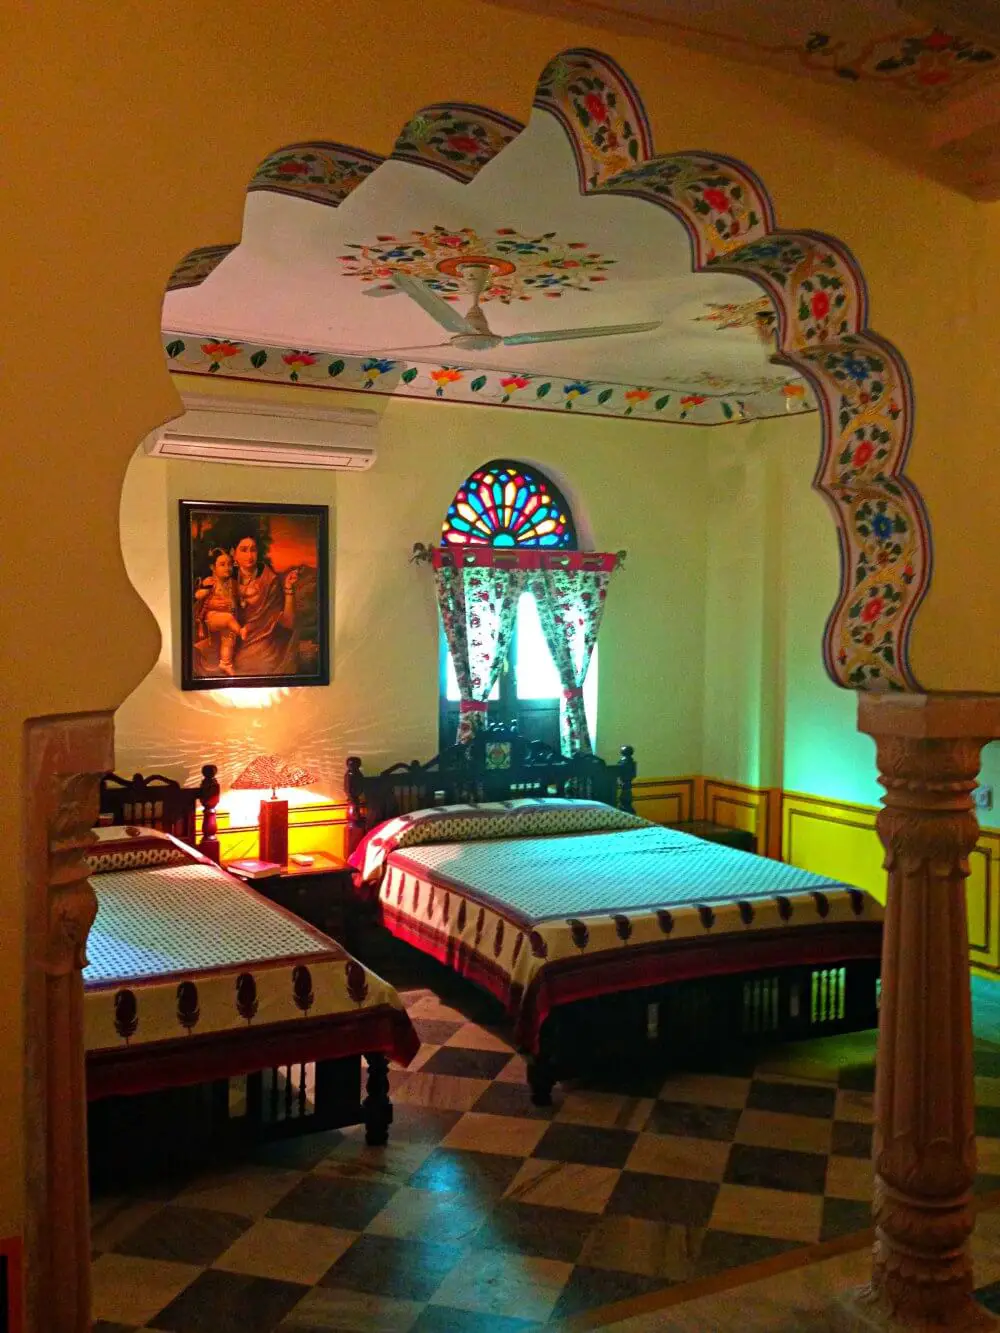 Bissau Palace Hotel Jaipur